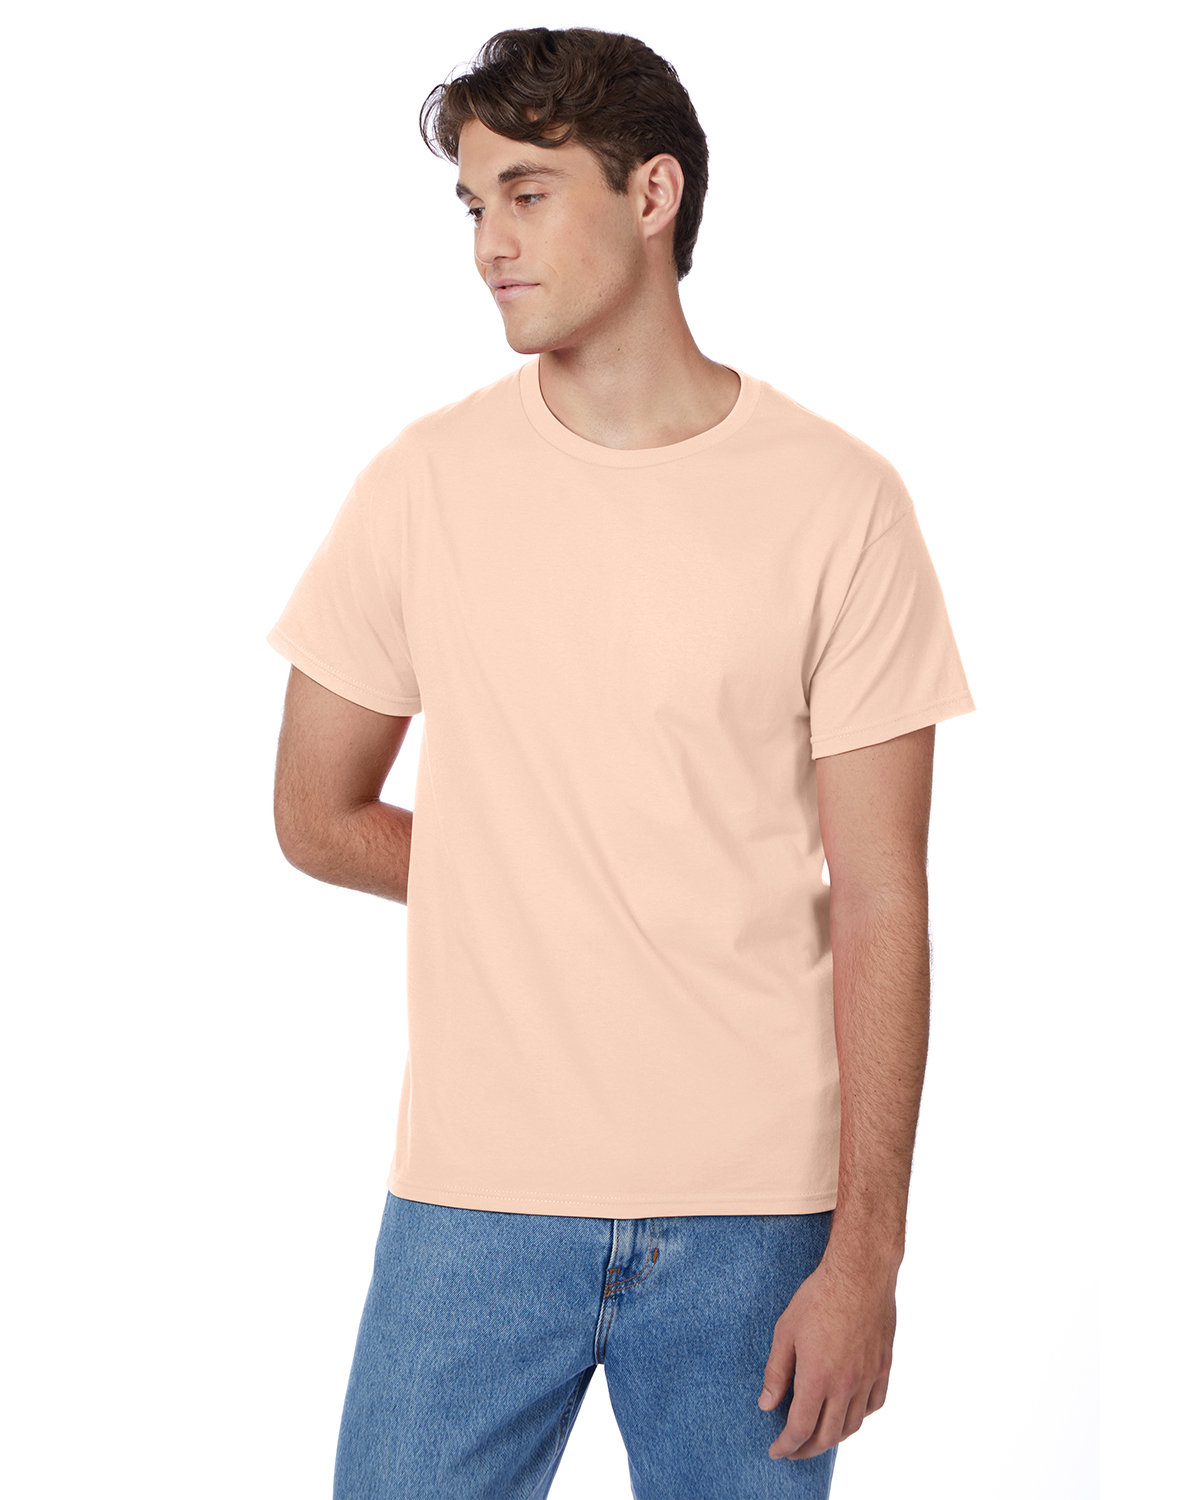 Hanes Men's Authentic-T T-Shirt CANDY ORANGE 